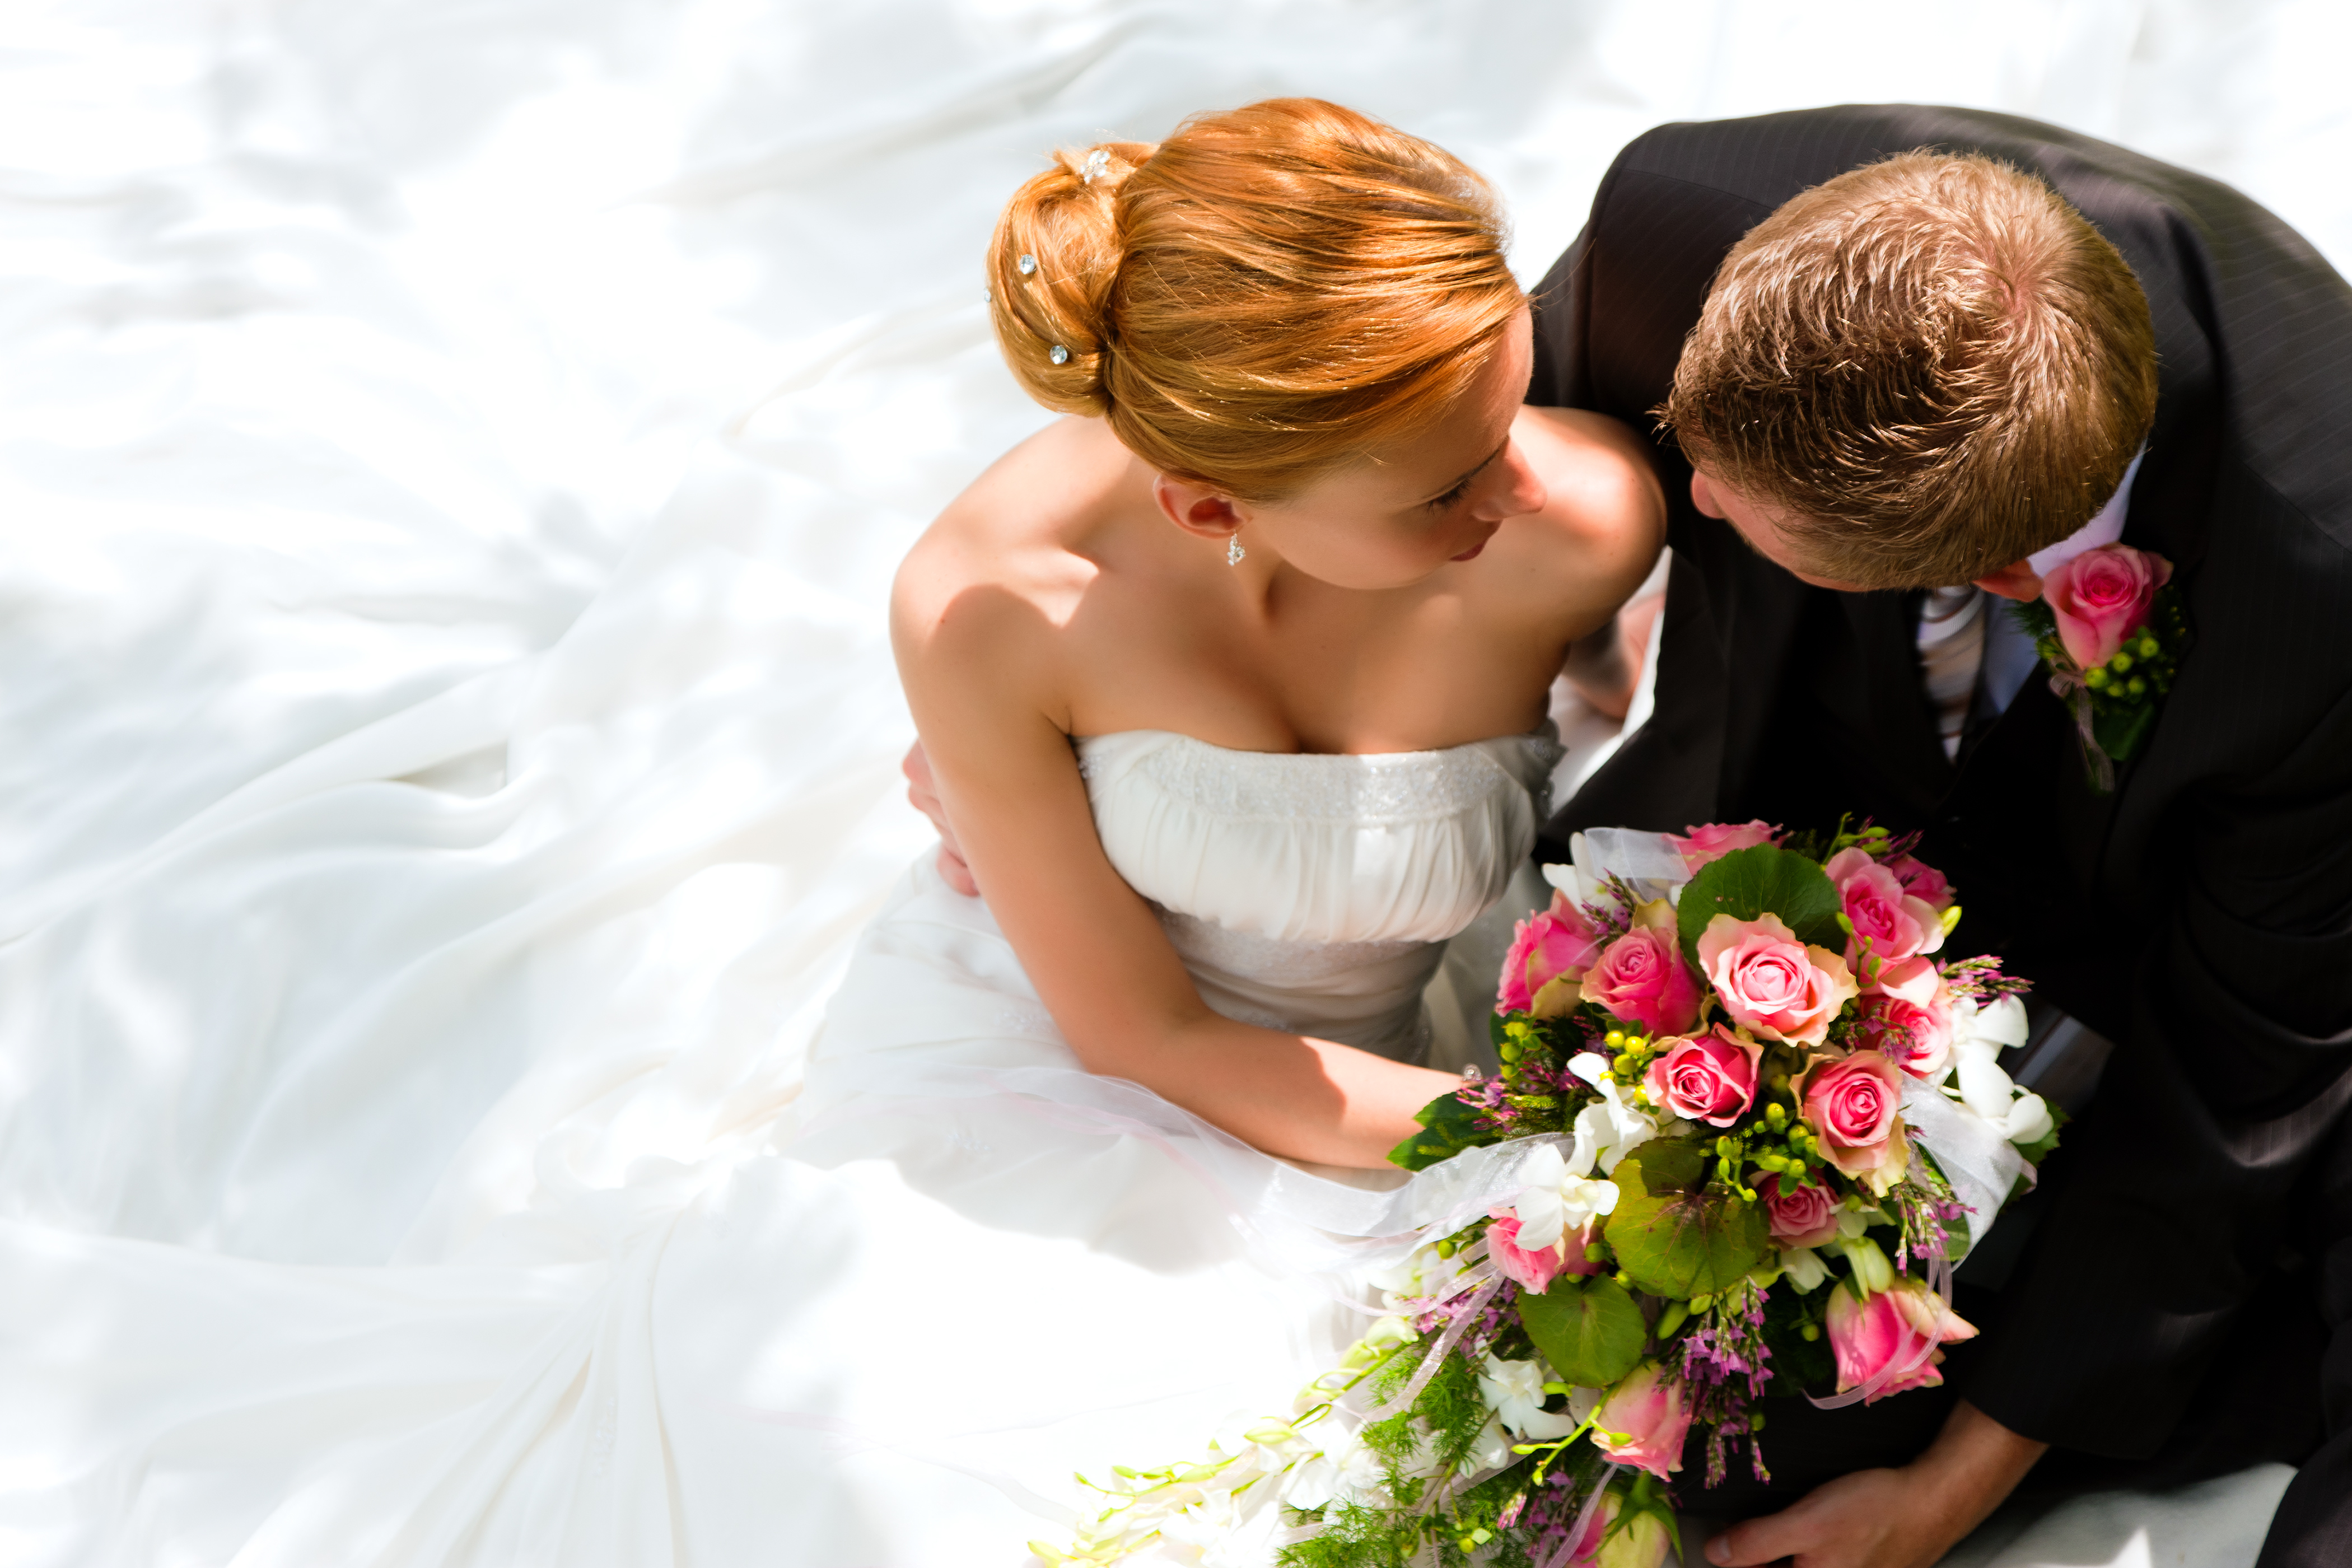 Un marié tenant un bouquet de fleurs est photographié assis à côté de sa fiancée | Source : Shutterstock